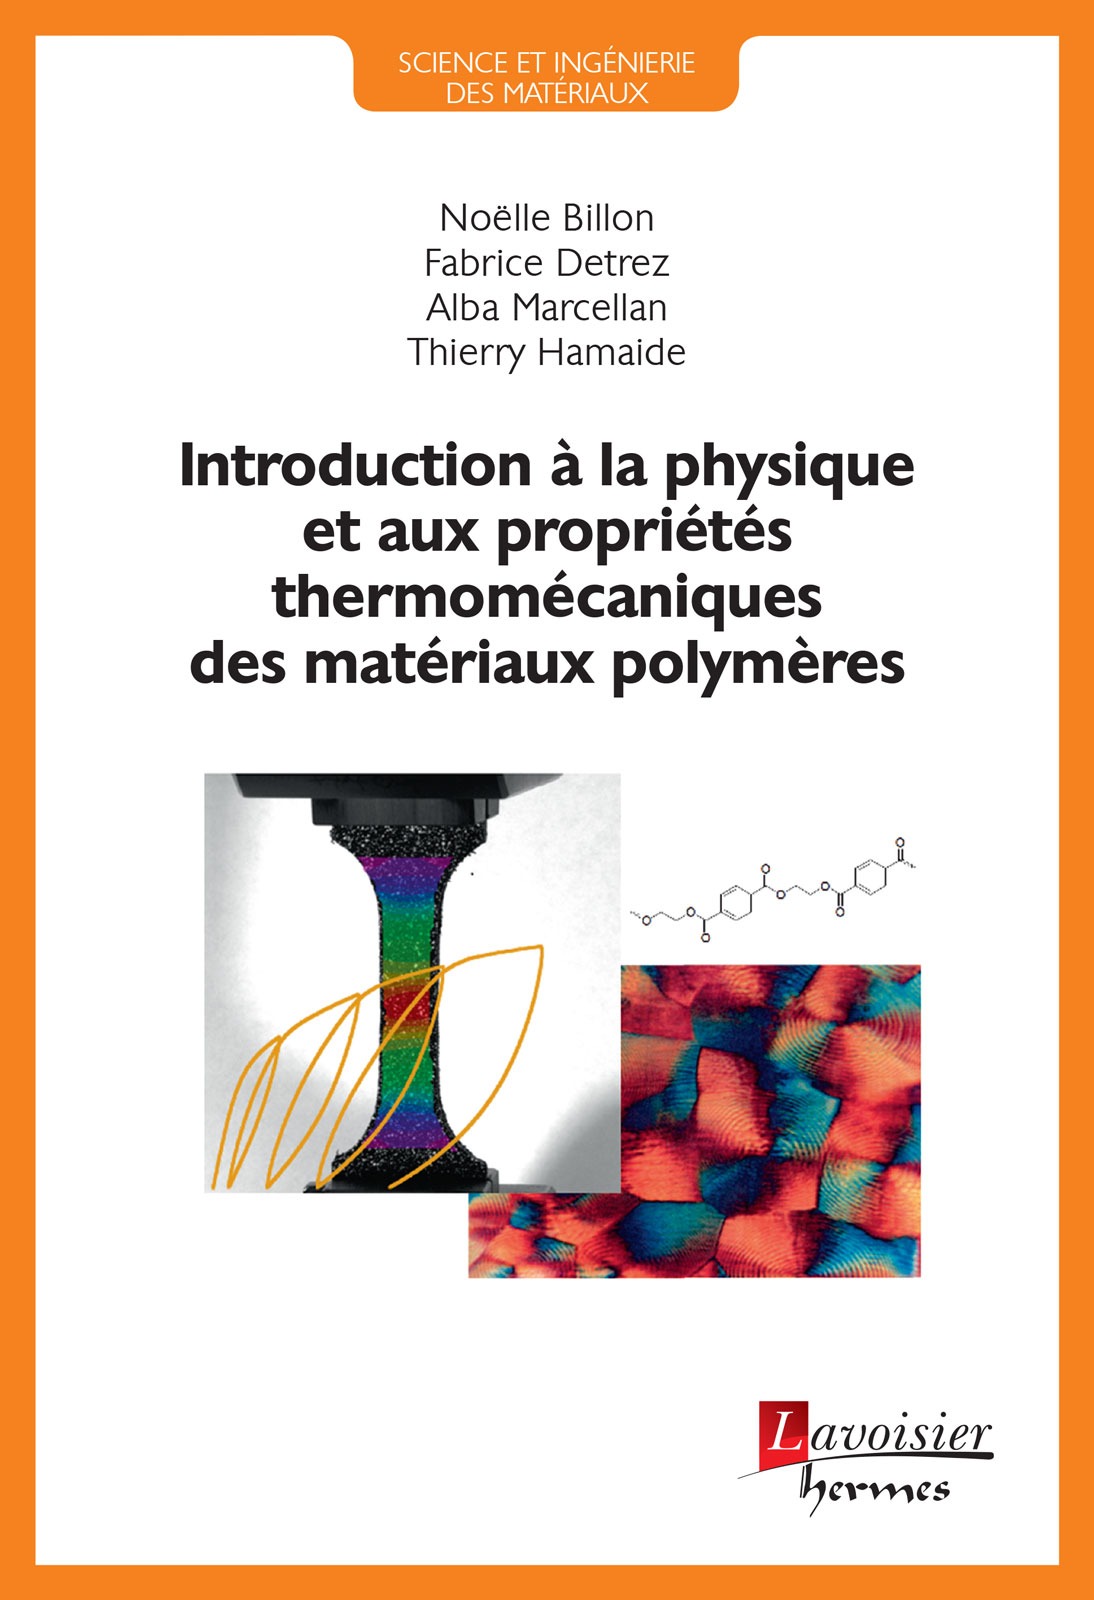 Introduction à la physique et aux propriétés thermomécaniques des matériaux polymères